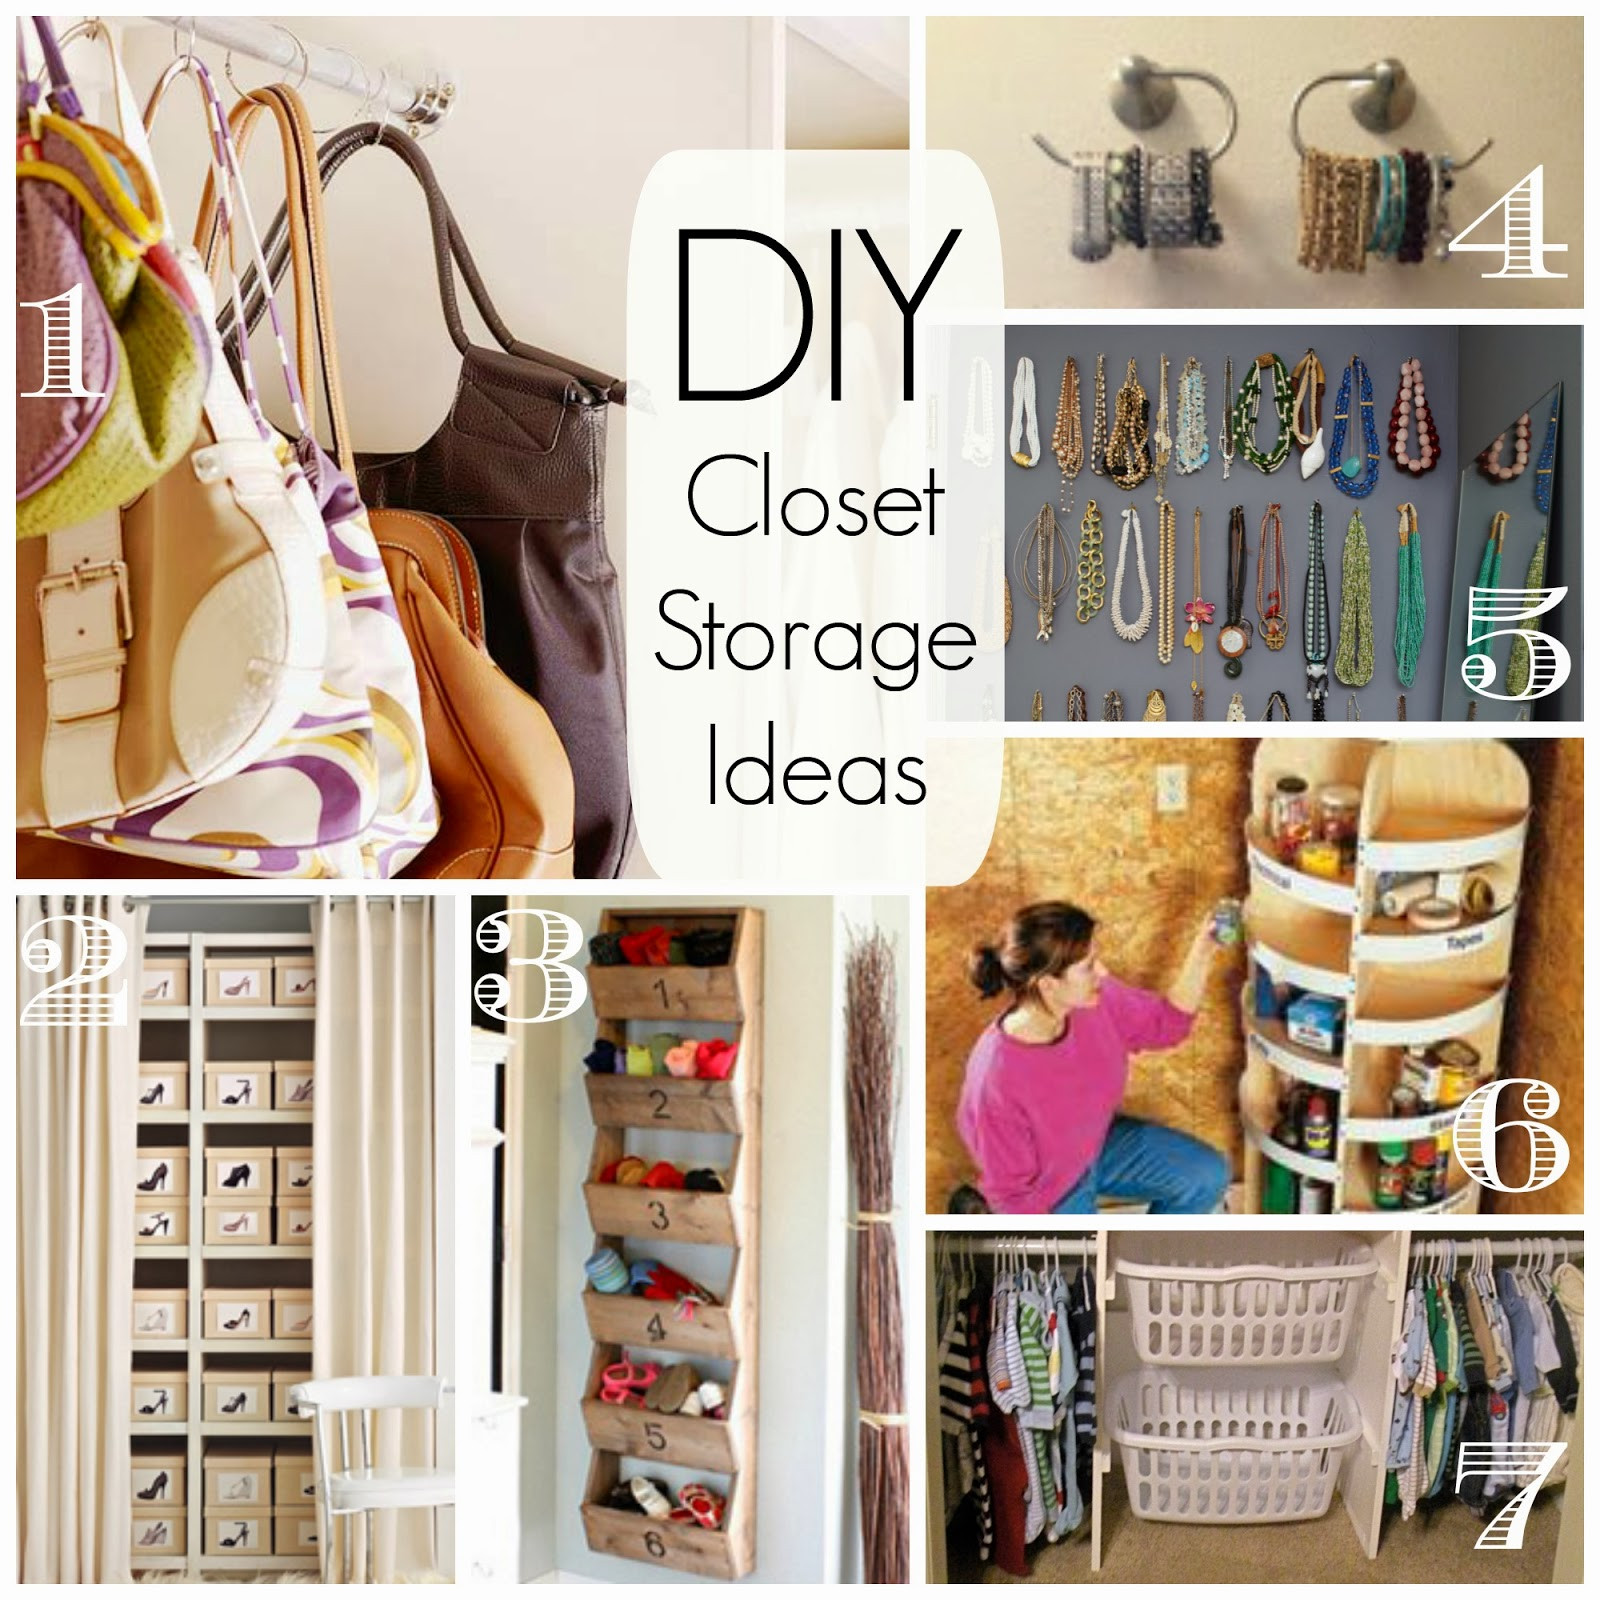 DIY Closet Organizer Ideas
 How To Build A Closet OrganizerConfession